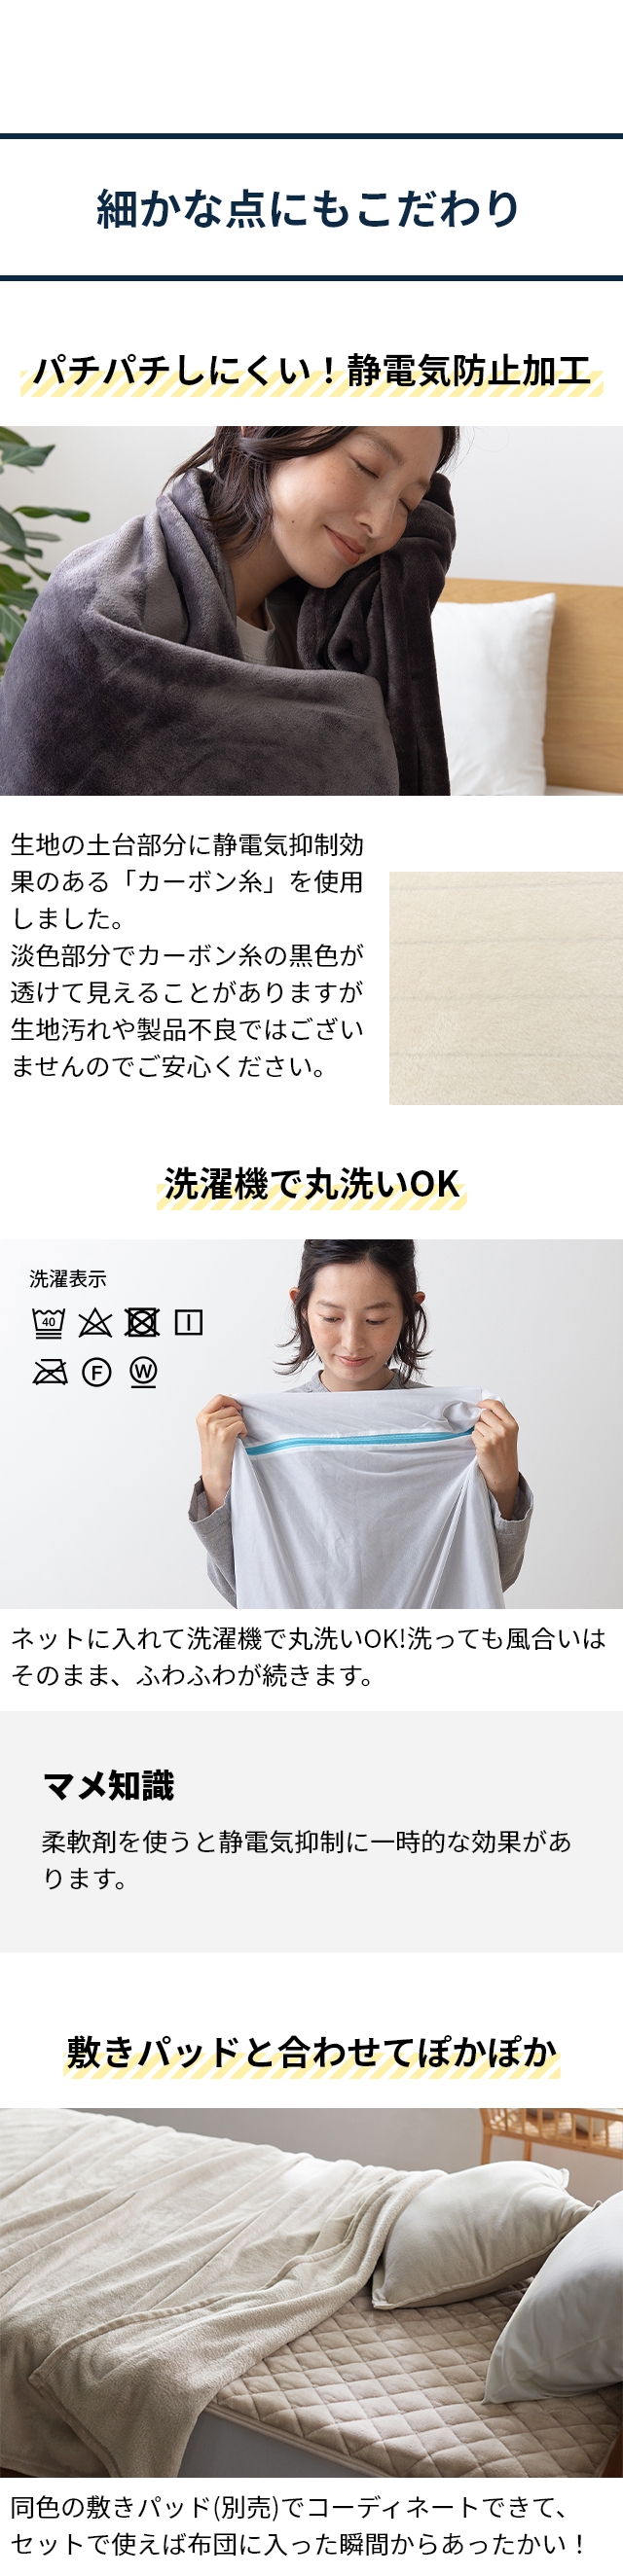 mofua (モフア) プレミアムマイクロファイバー 毛布 SD セミダブル